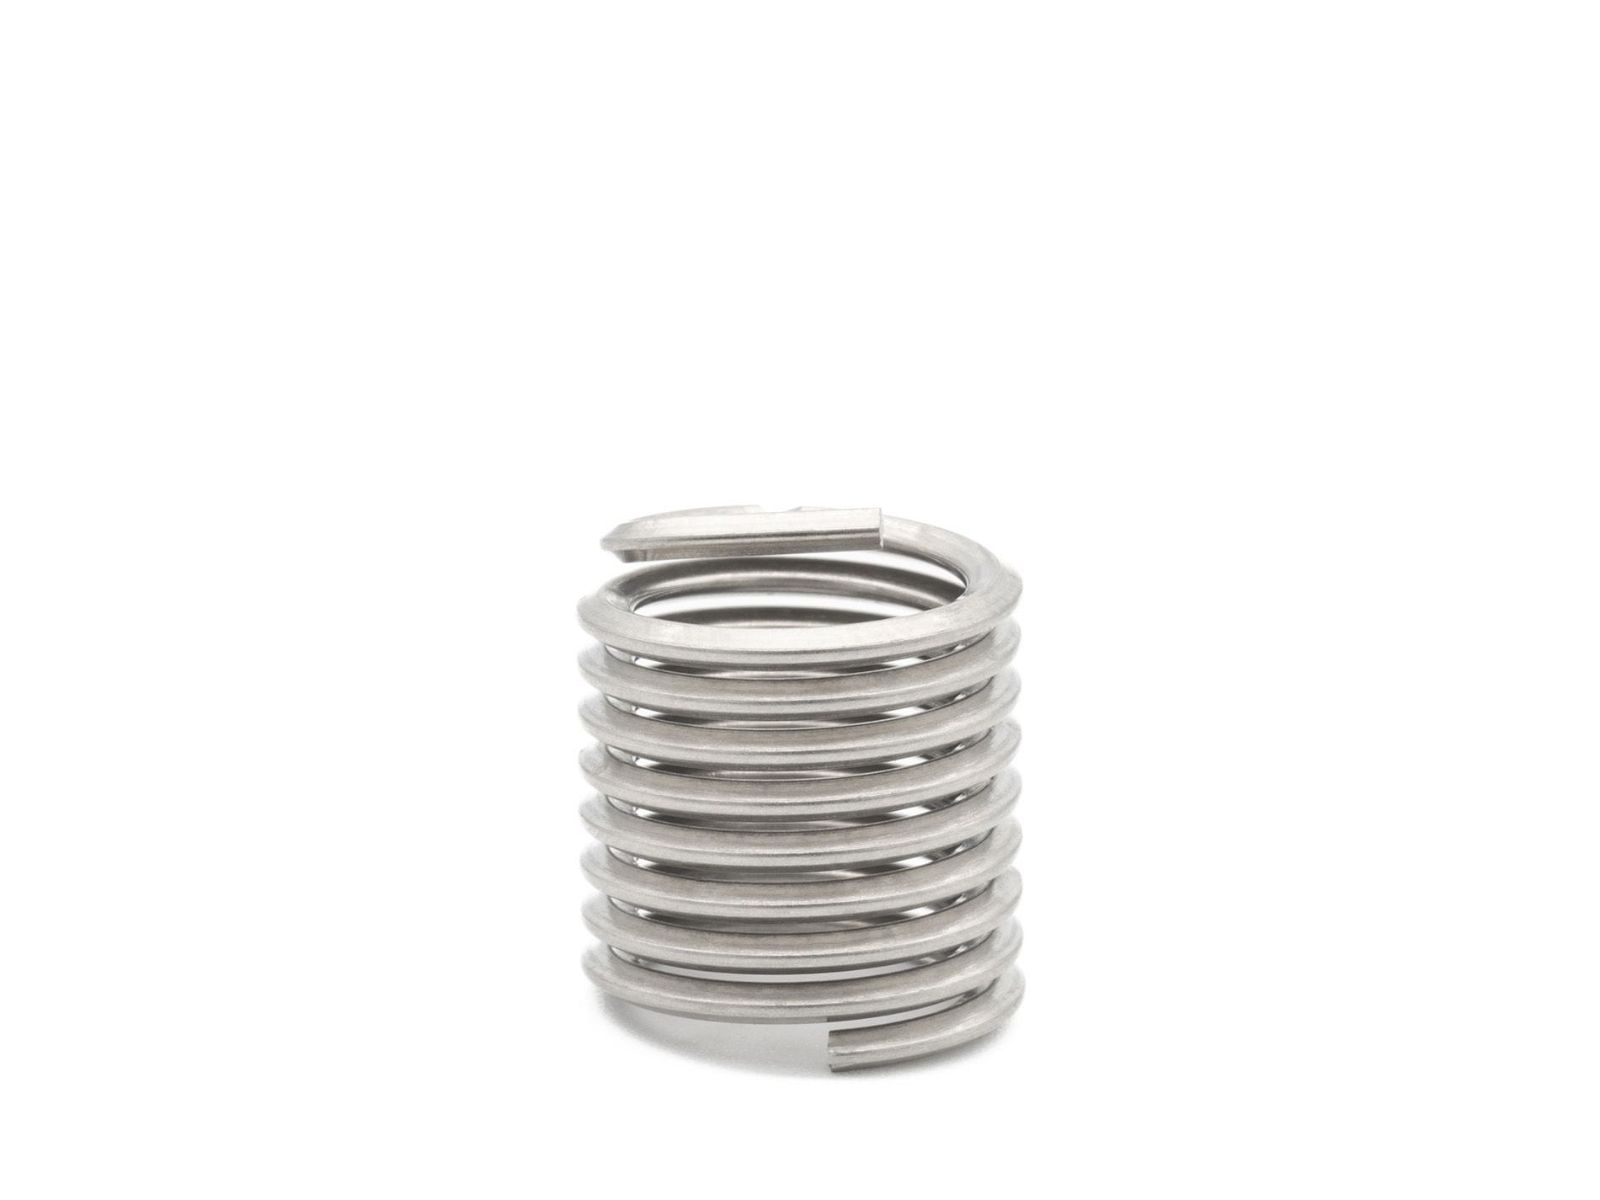 BaerCoil Wire Thread Inserts UNF 1/4 x 28 - 1.5 D (9.53 mm) 10 pcs.